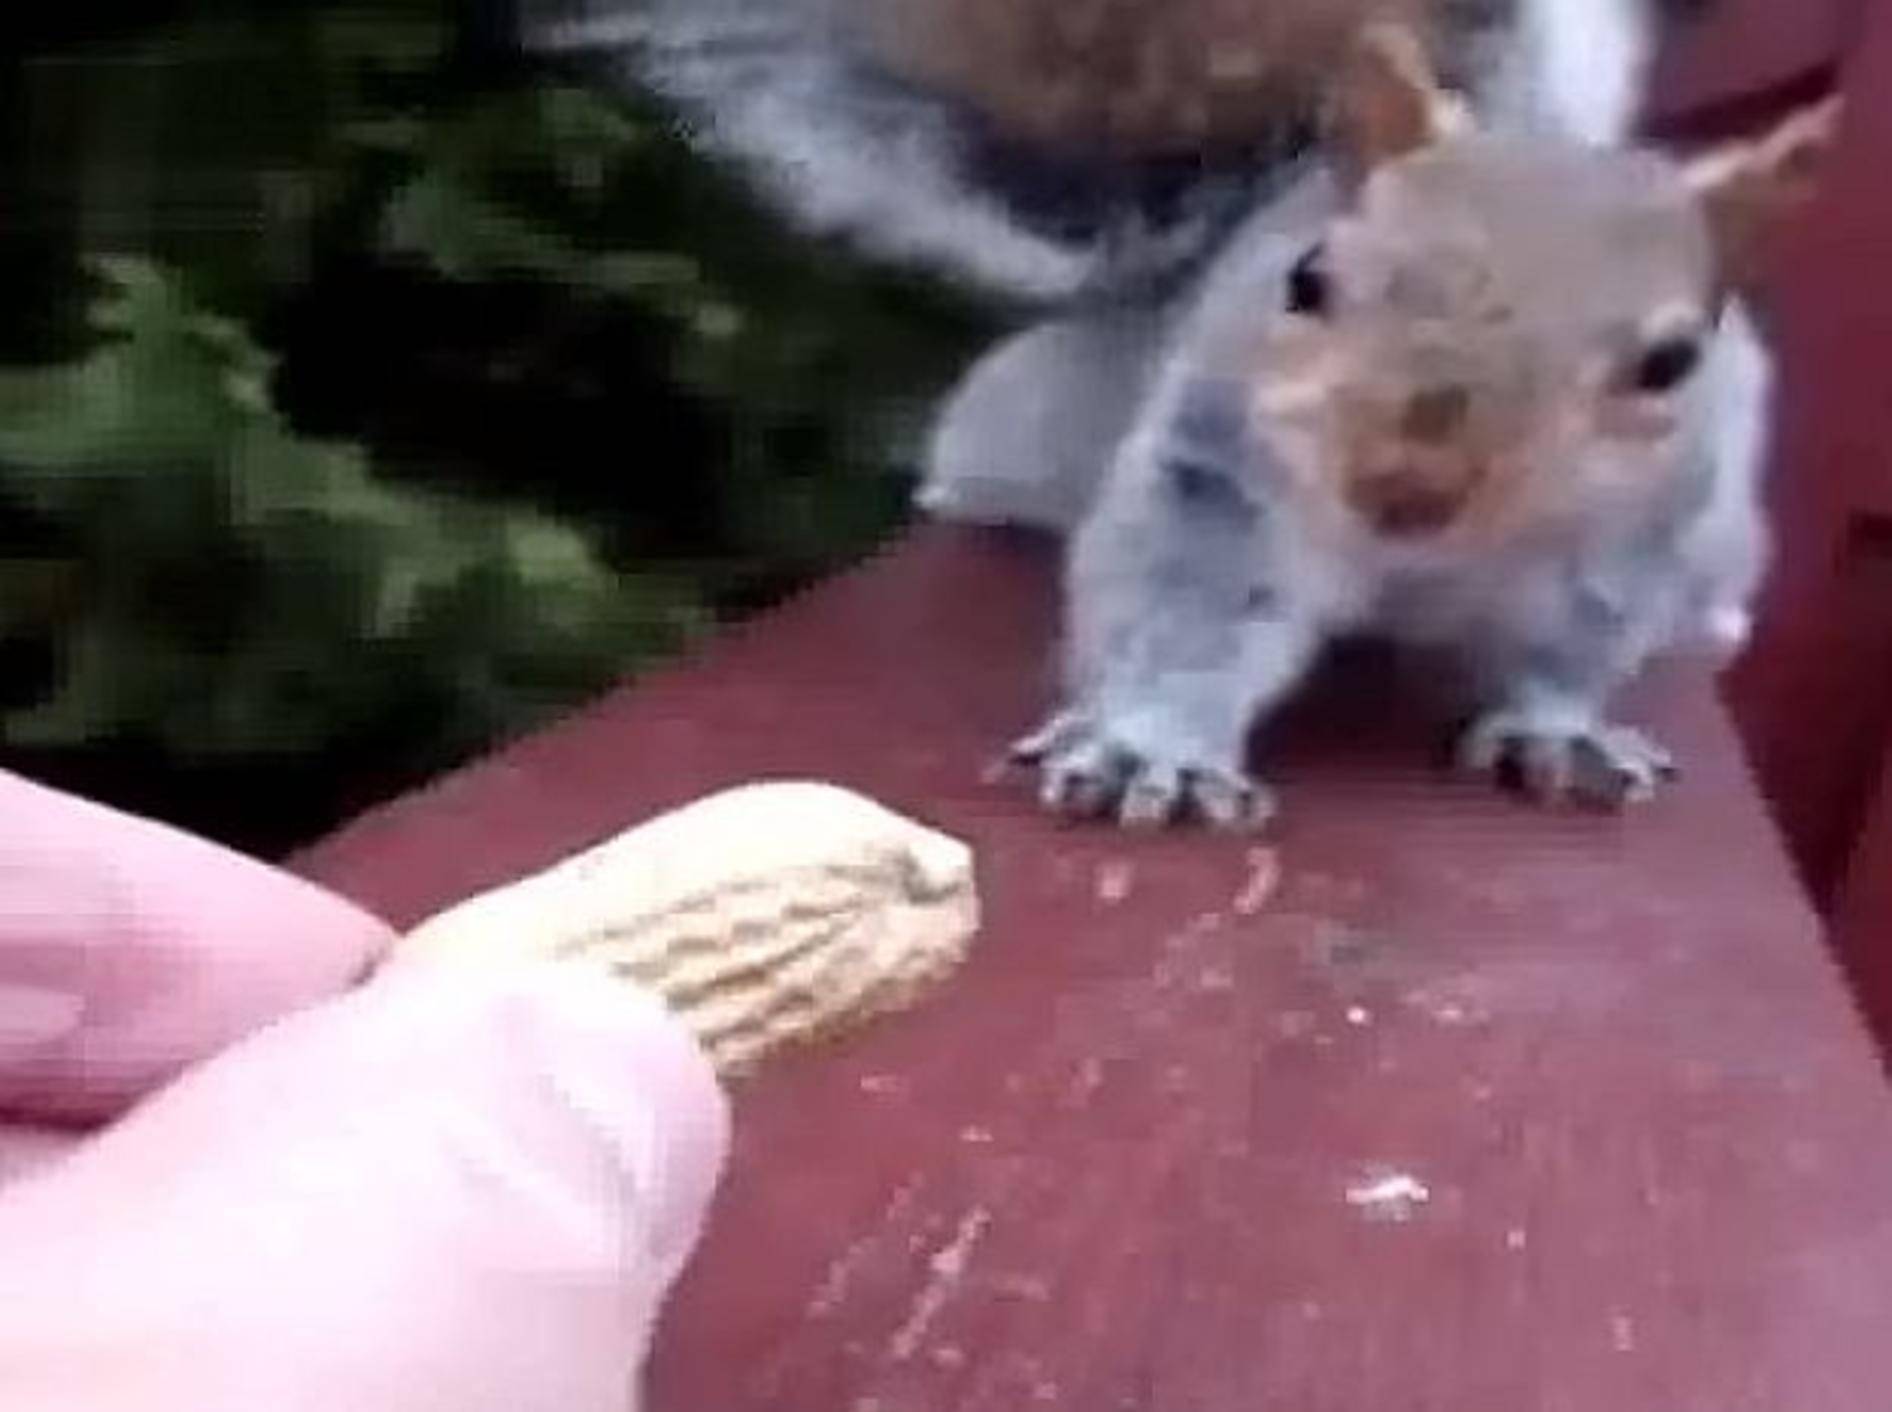 Hörnchen und Nuss: "Soll ich oder soll ich nicht?" – Bild: Youtube / A T.Khan